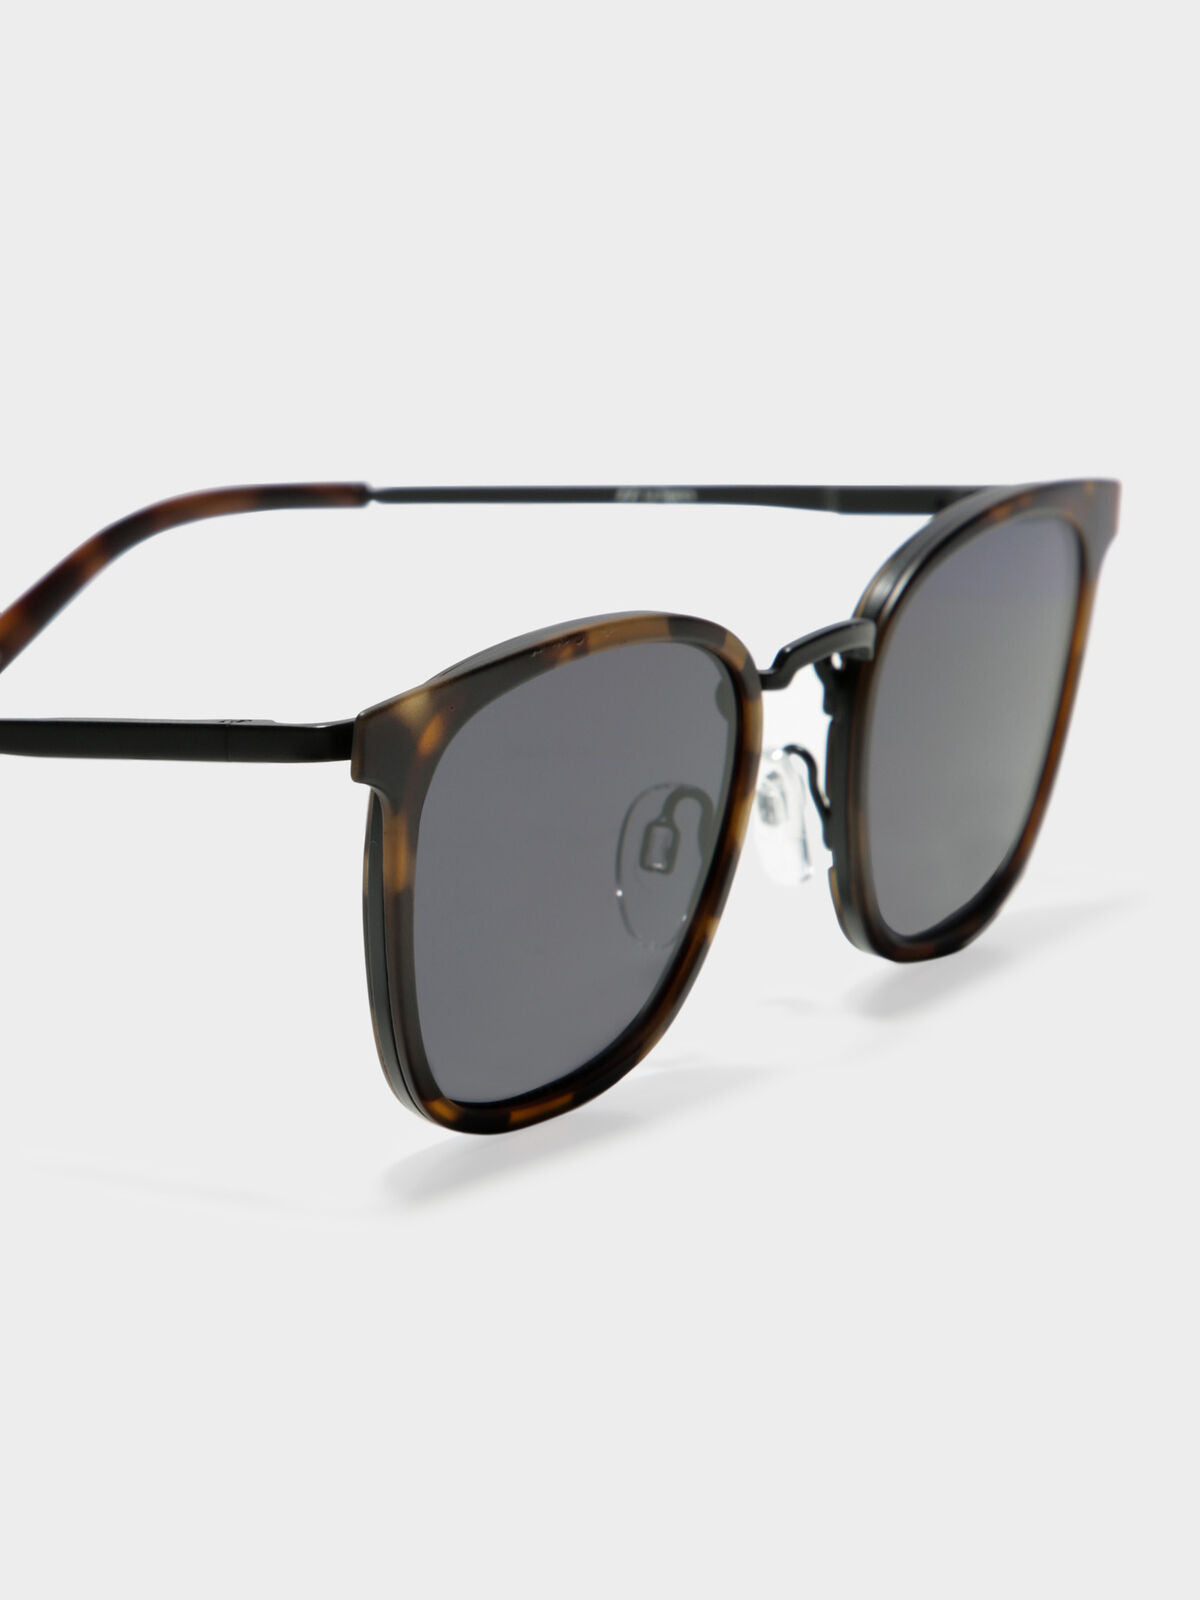 Racketeer Matte Sunglasses in Matte Tortoiseshell with Smoke Lenses